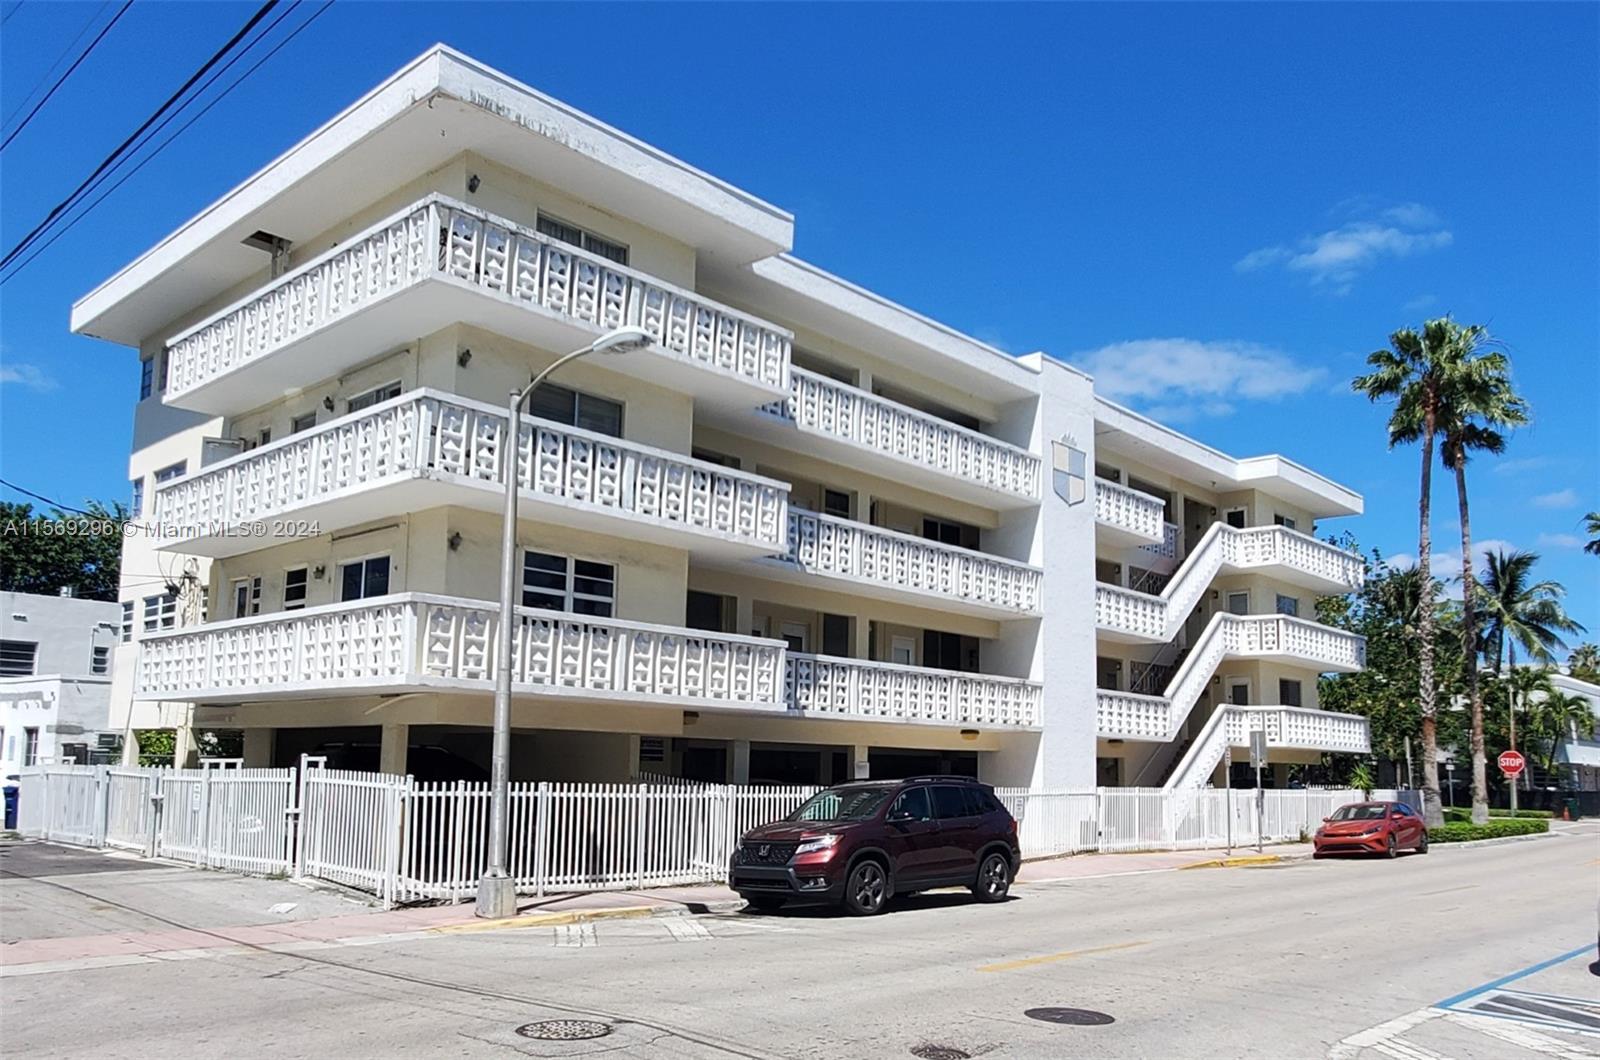 Rental Property at 900 Euclid Ave 10, Miami Beach, Miami-Dade County, Florida - Bathrooms: 1  - $1,800 MO.